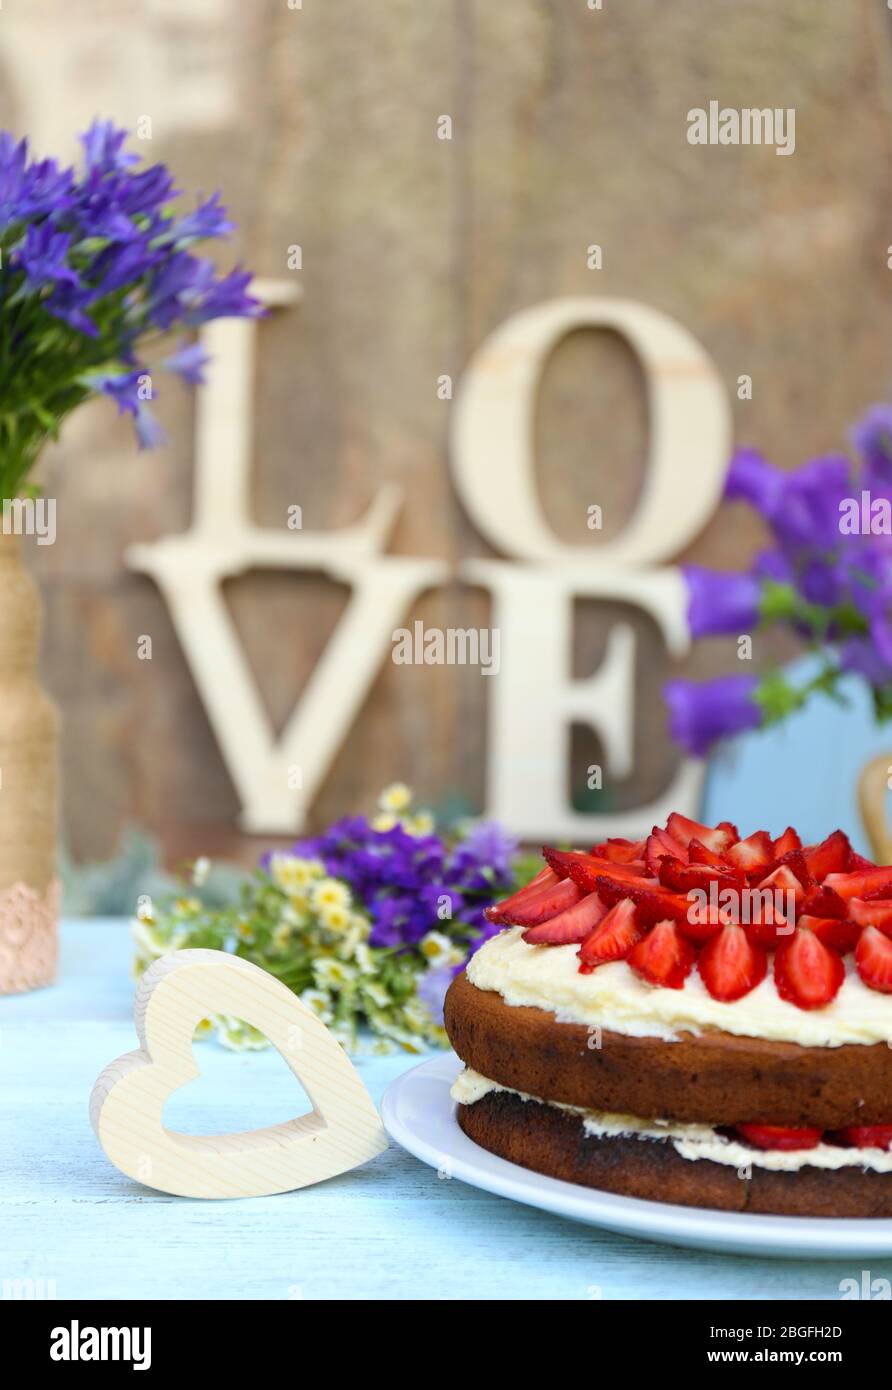 Torta di fragole con fiori selvatici e lettere decorative a tavola Foto Stock